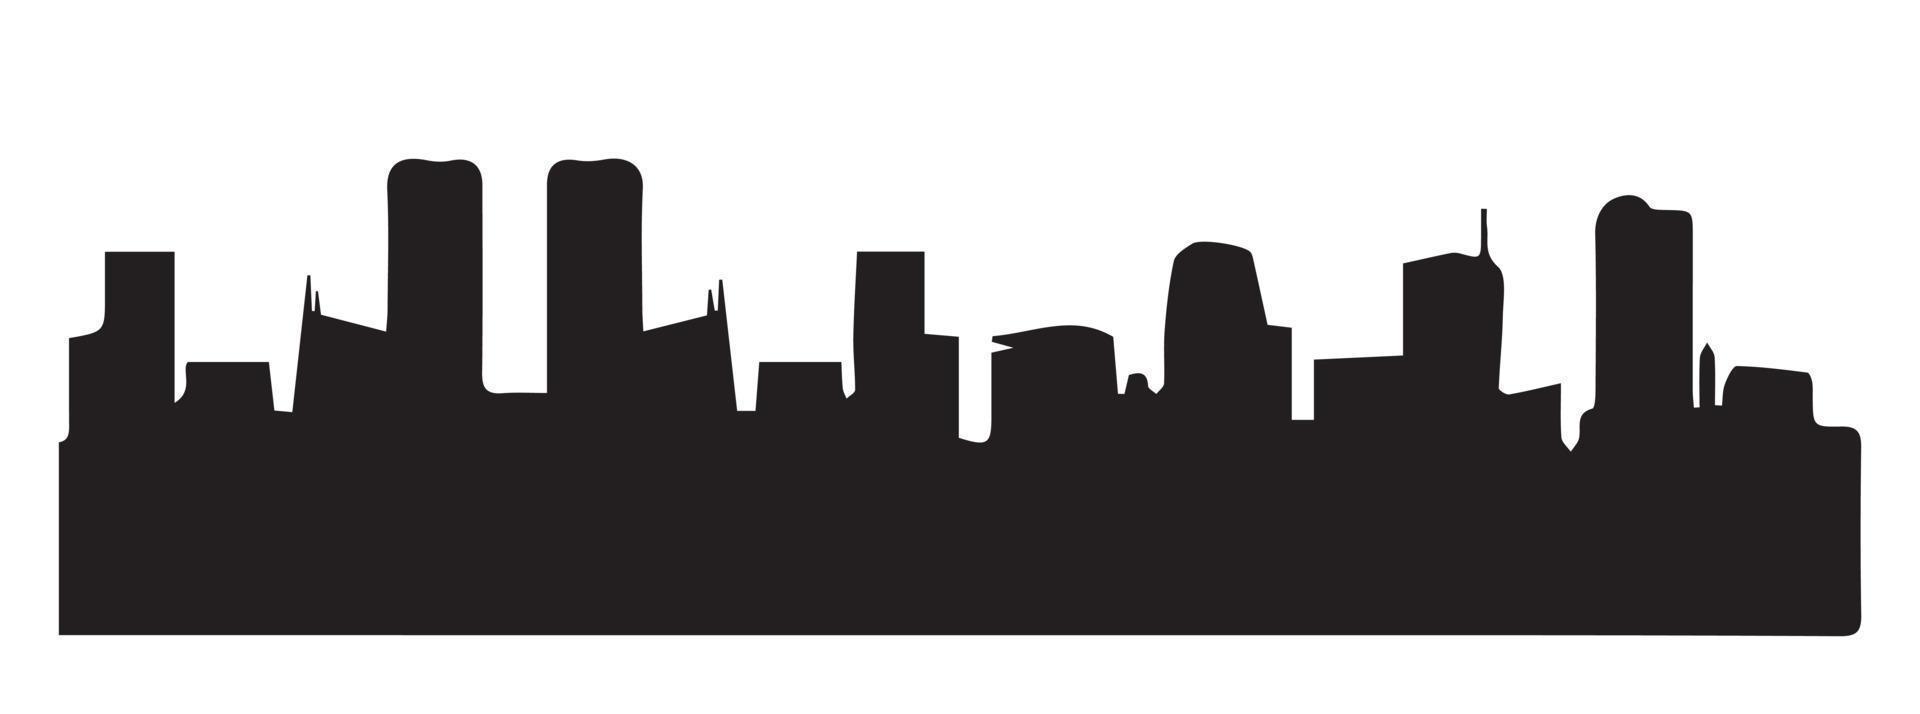 Stadtgebäude schwarze Silhouette. Stadt Form. Zeichen der Skyline der Stadt. isoliert auf weißem Hintergrund. Vektor-Illustration vektor